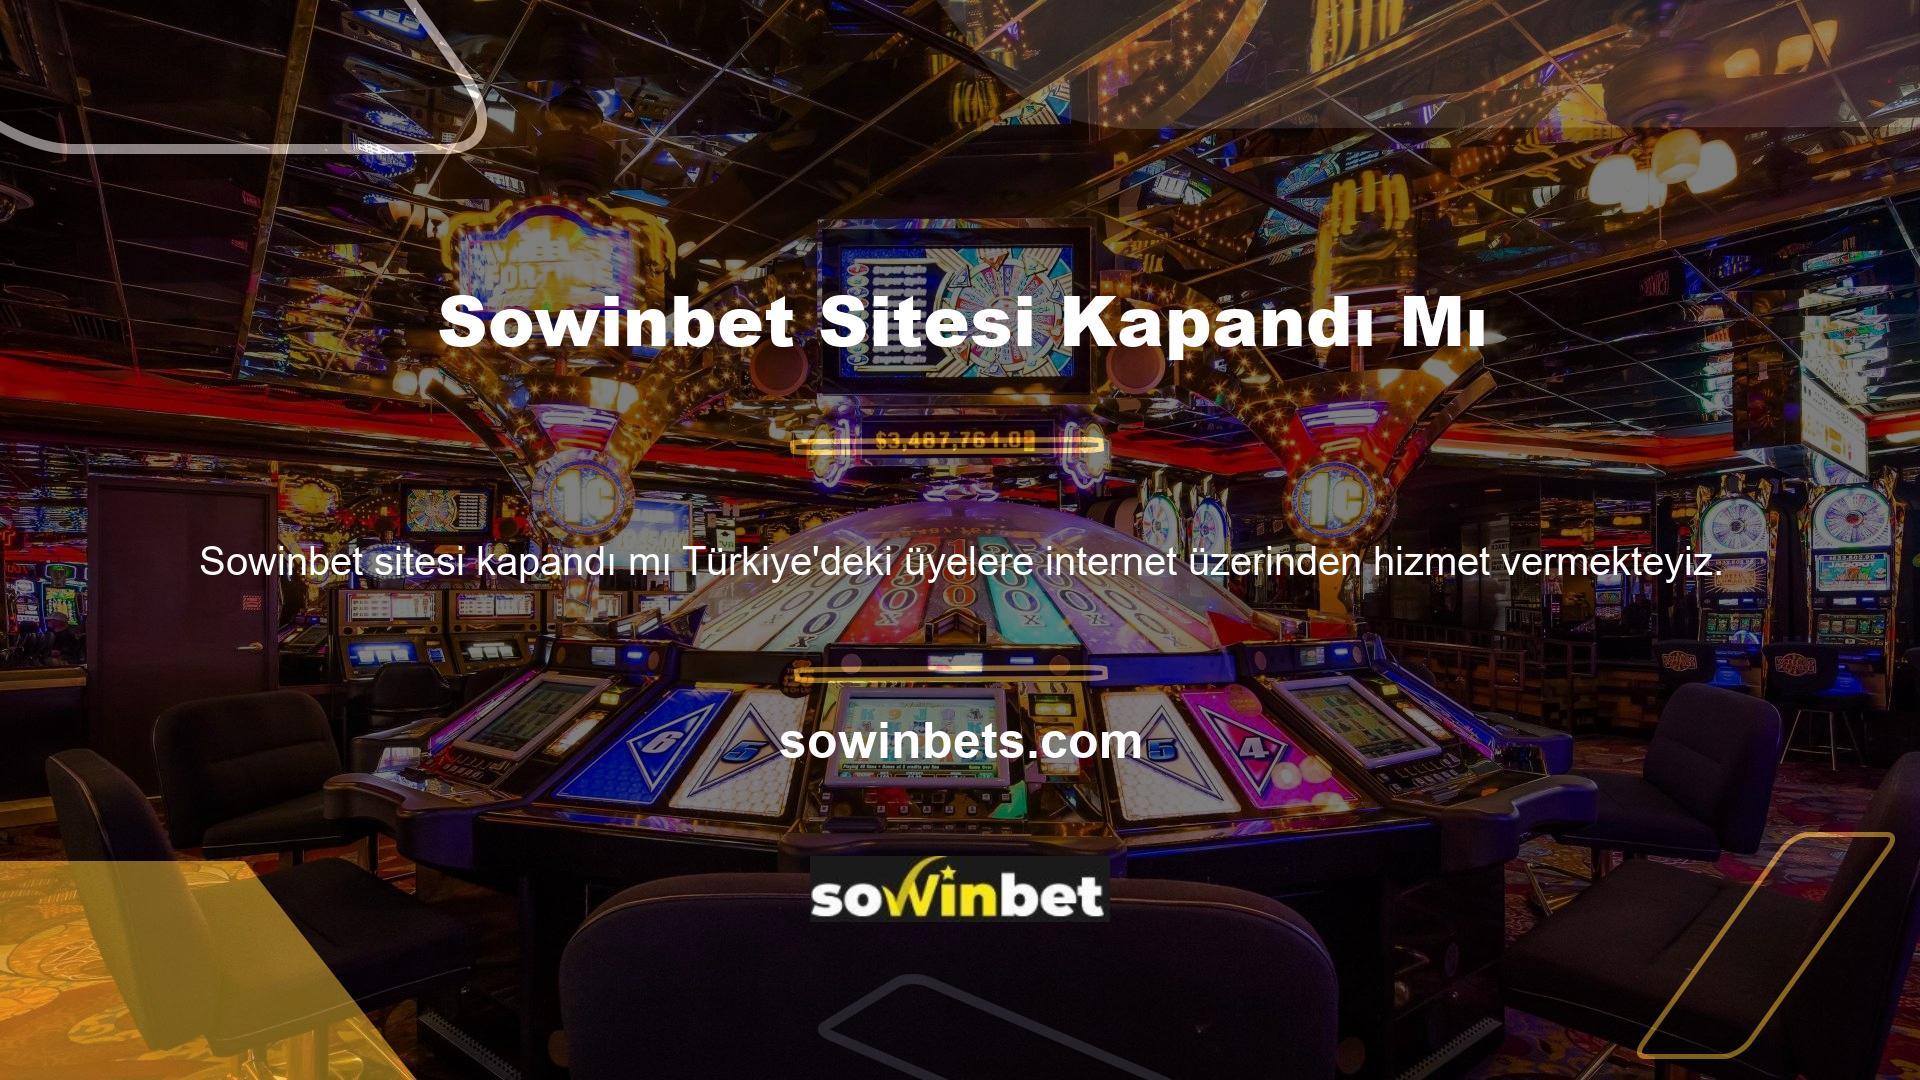 Ancak, Türkiye Cumhuriyeti kanunları sanal sitelerde casino oynamayı yasaklamaktadır